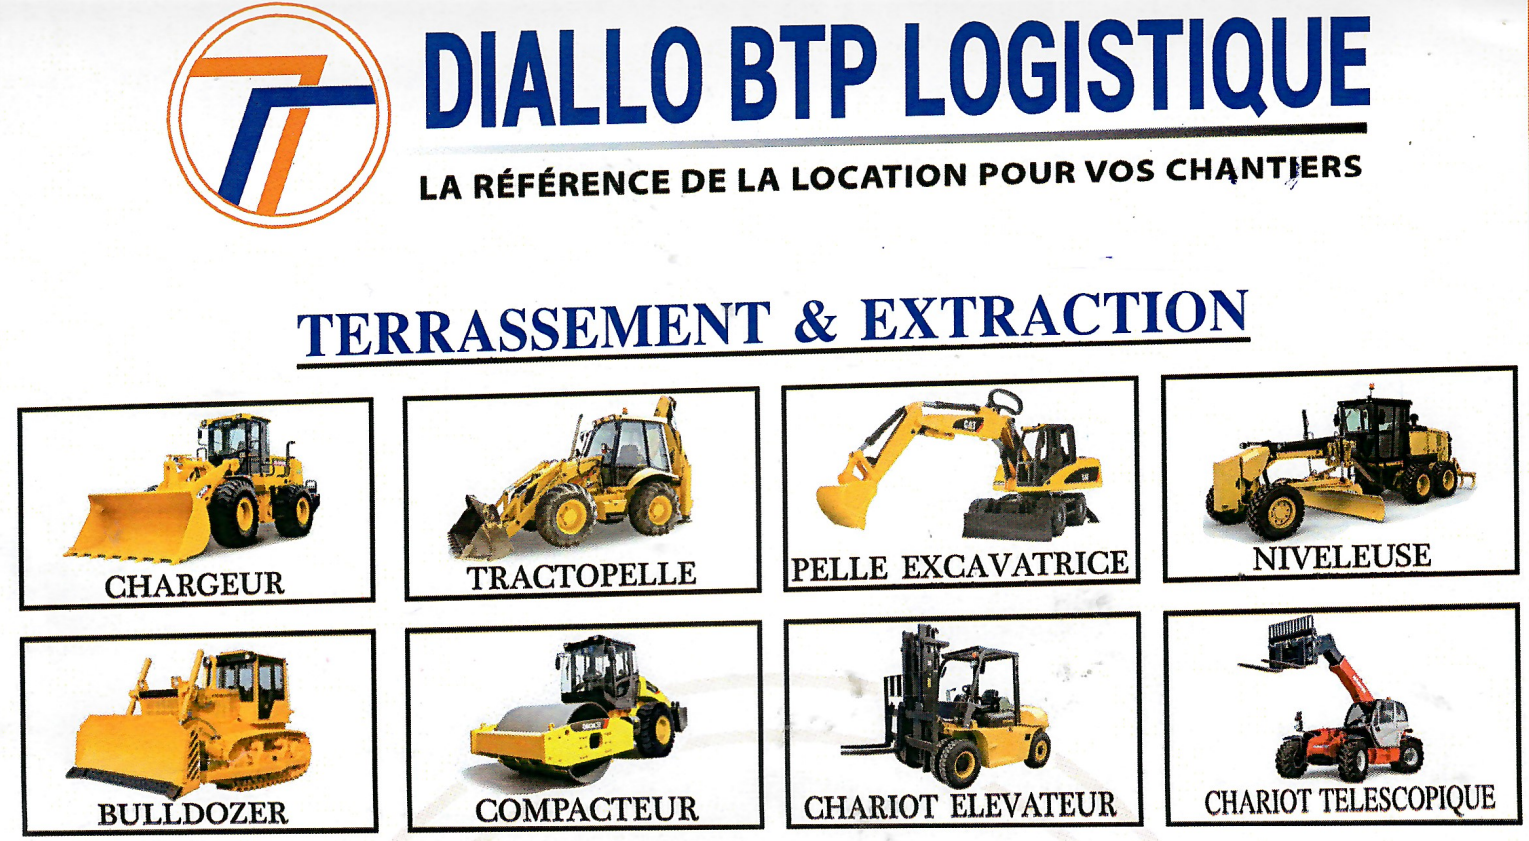 Alquiler de maquinaria de construcción en Senegal: DIALLO BTP Logistique - Su socio de confianza en Dakar